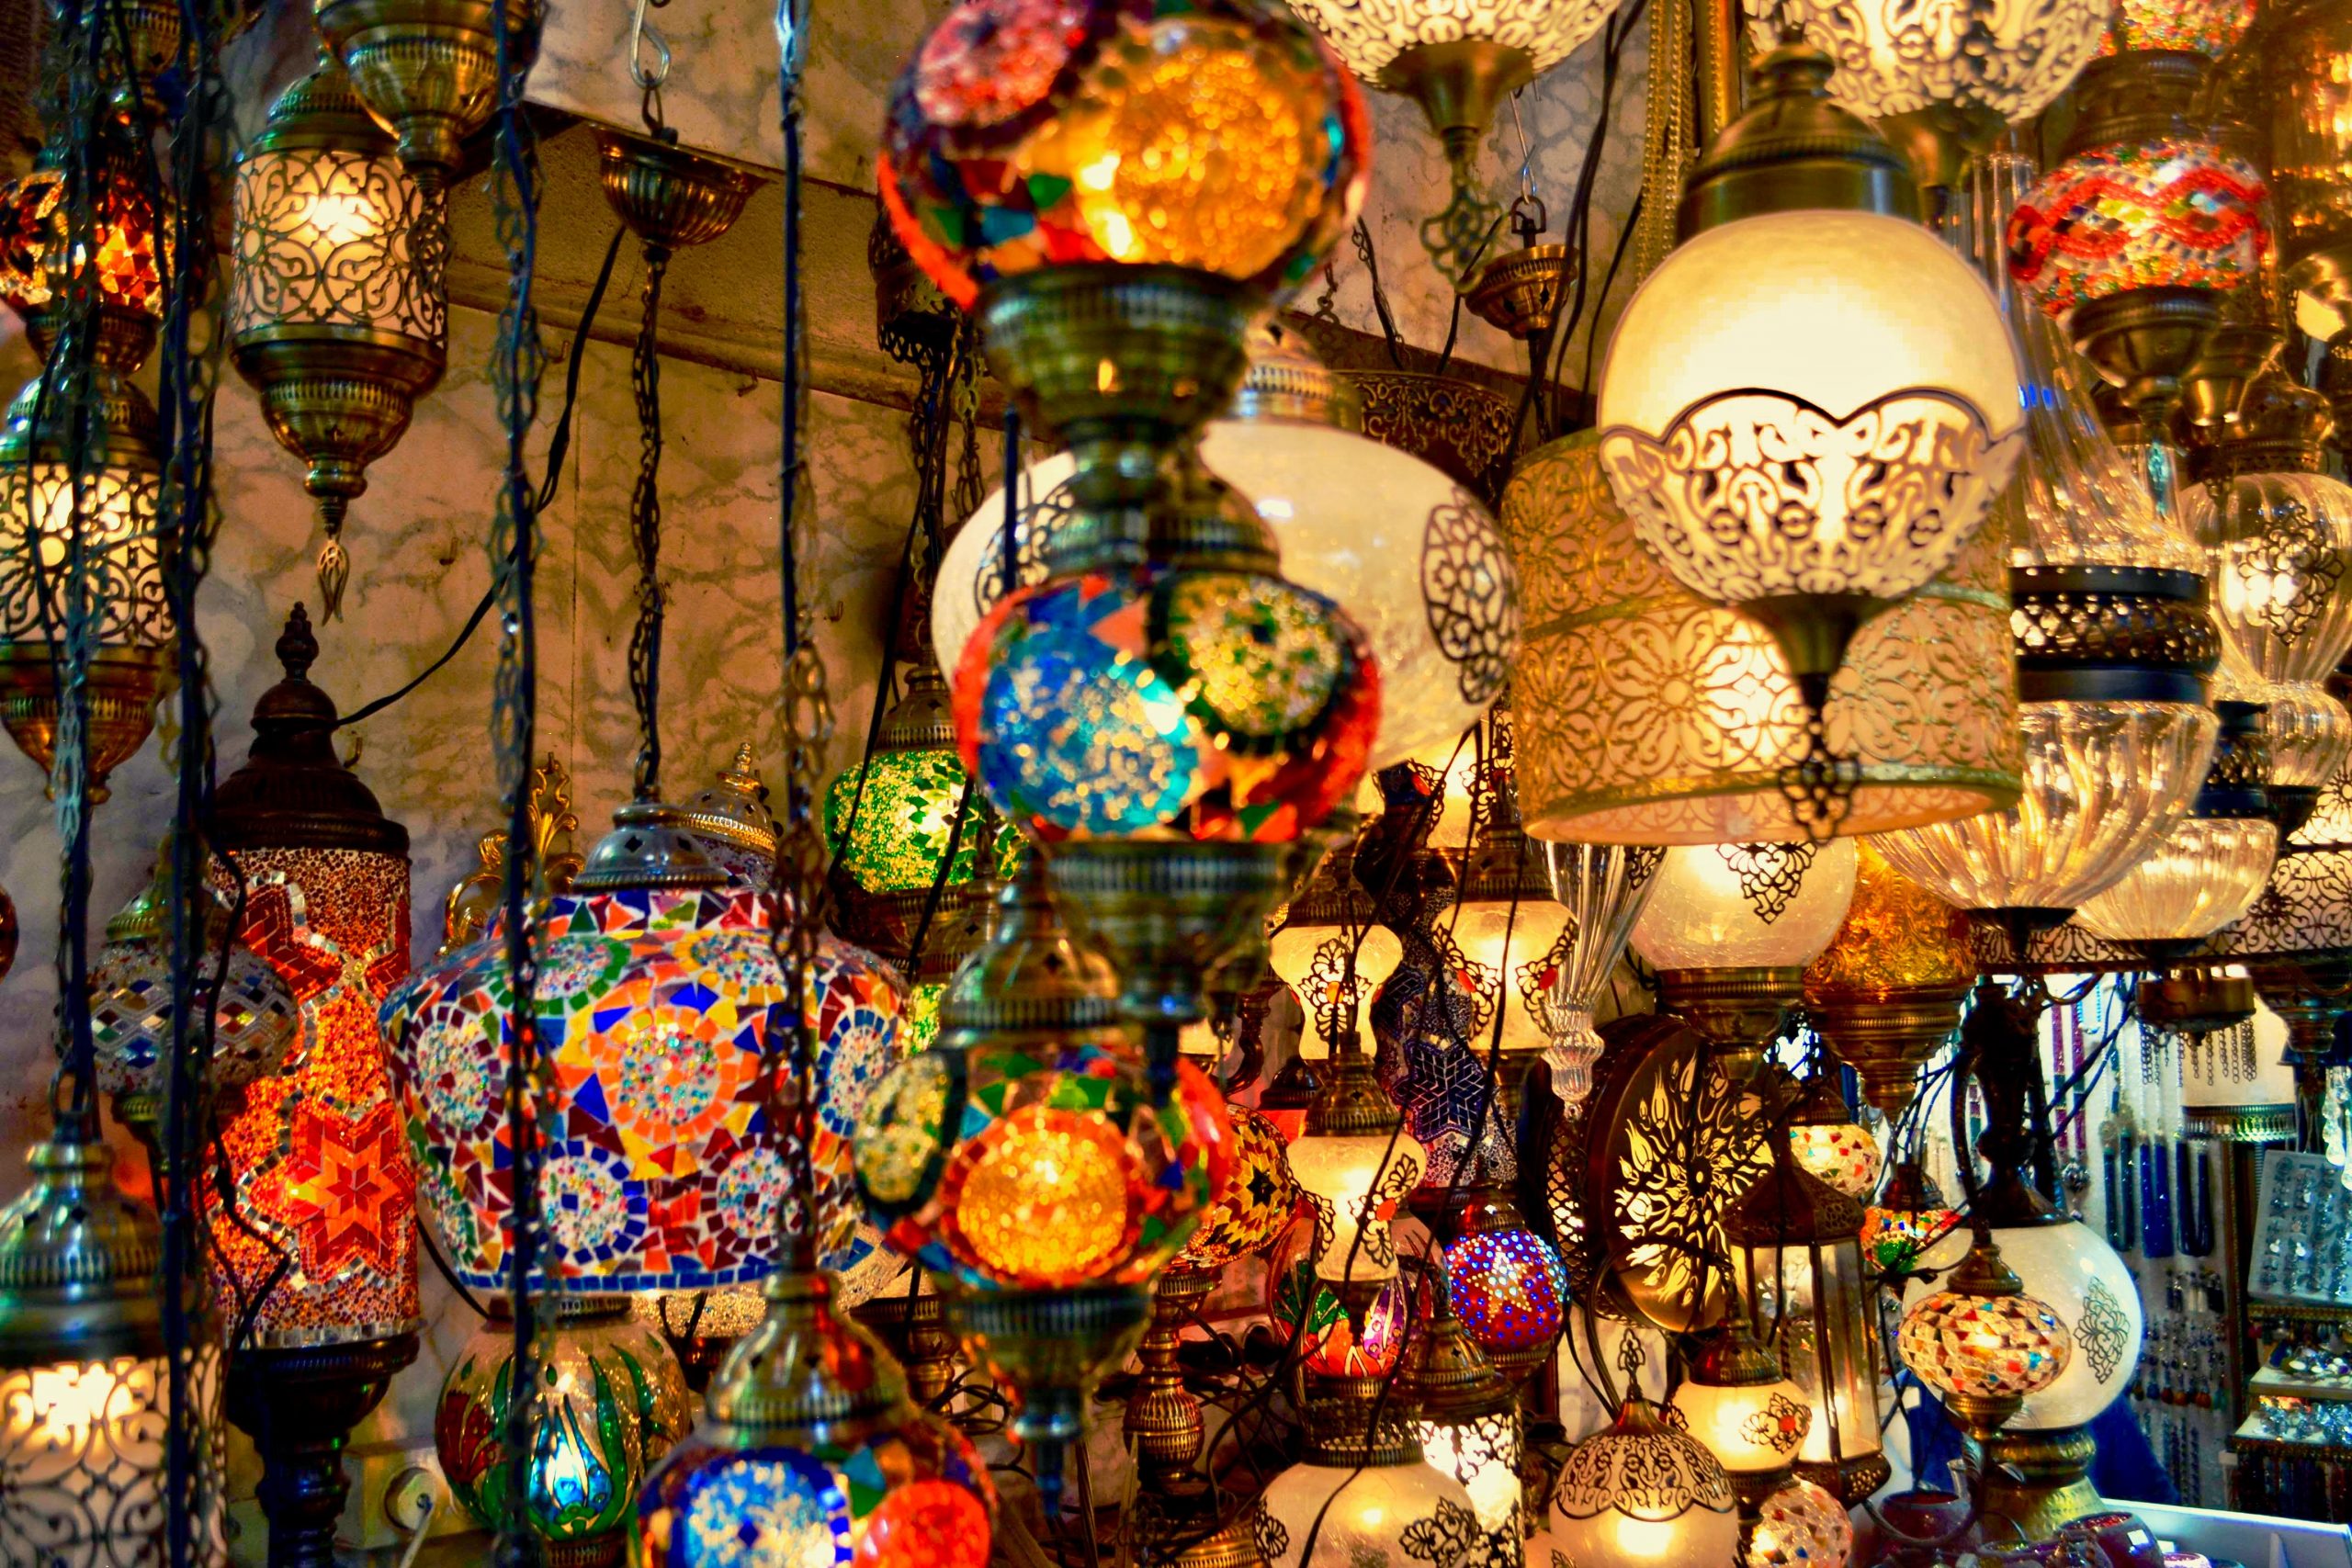 Turkish mosaic lamps and lanterns